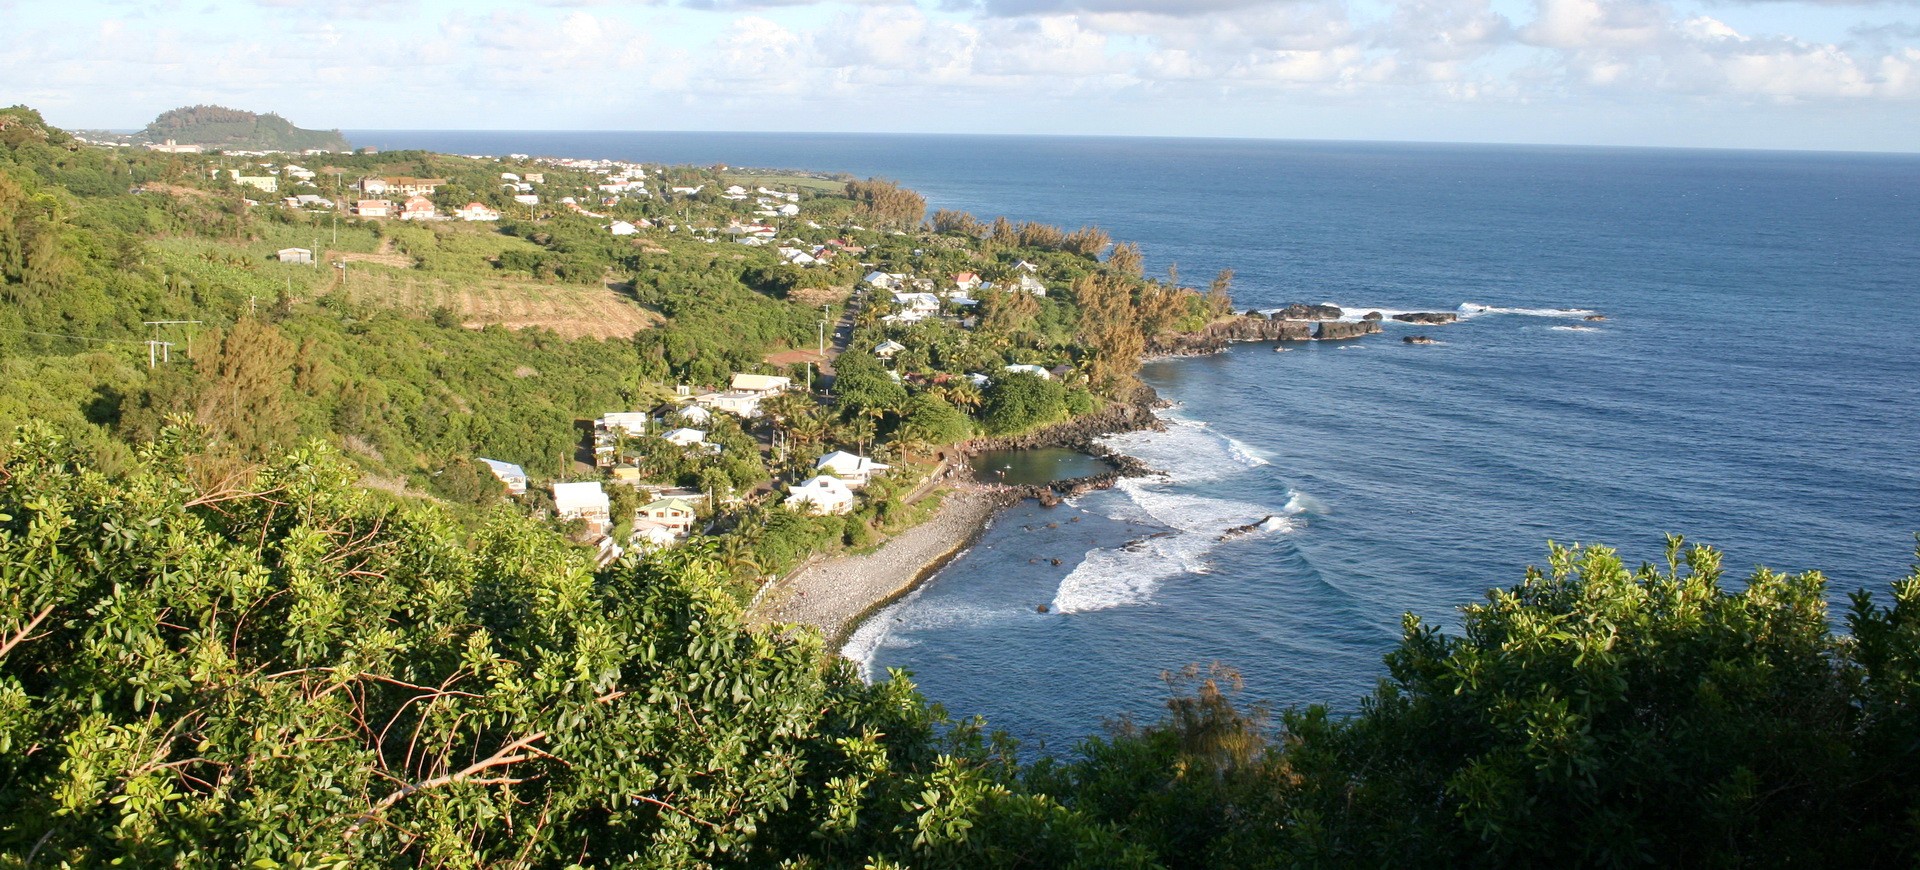 Voyage combiné île de la Réunion et île Maurice